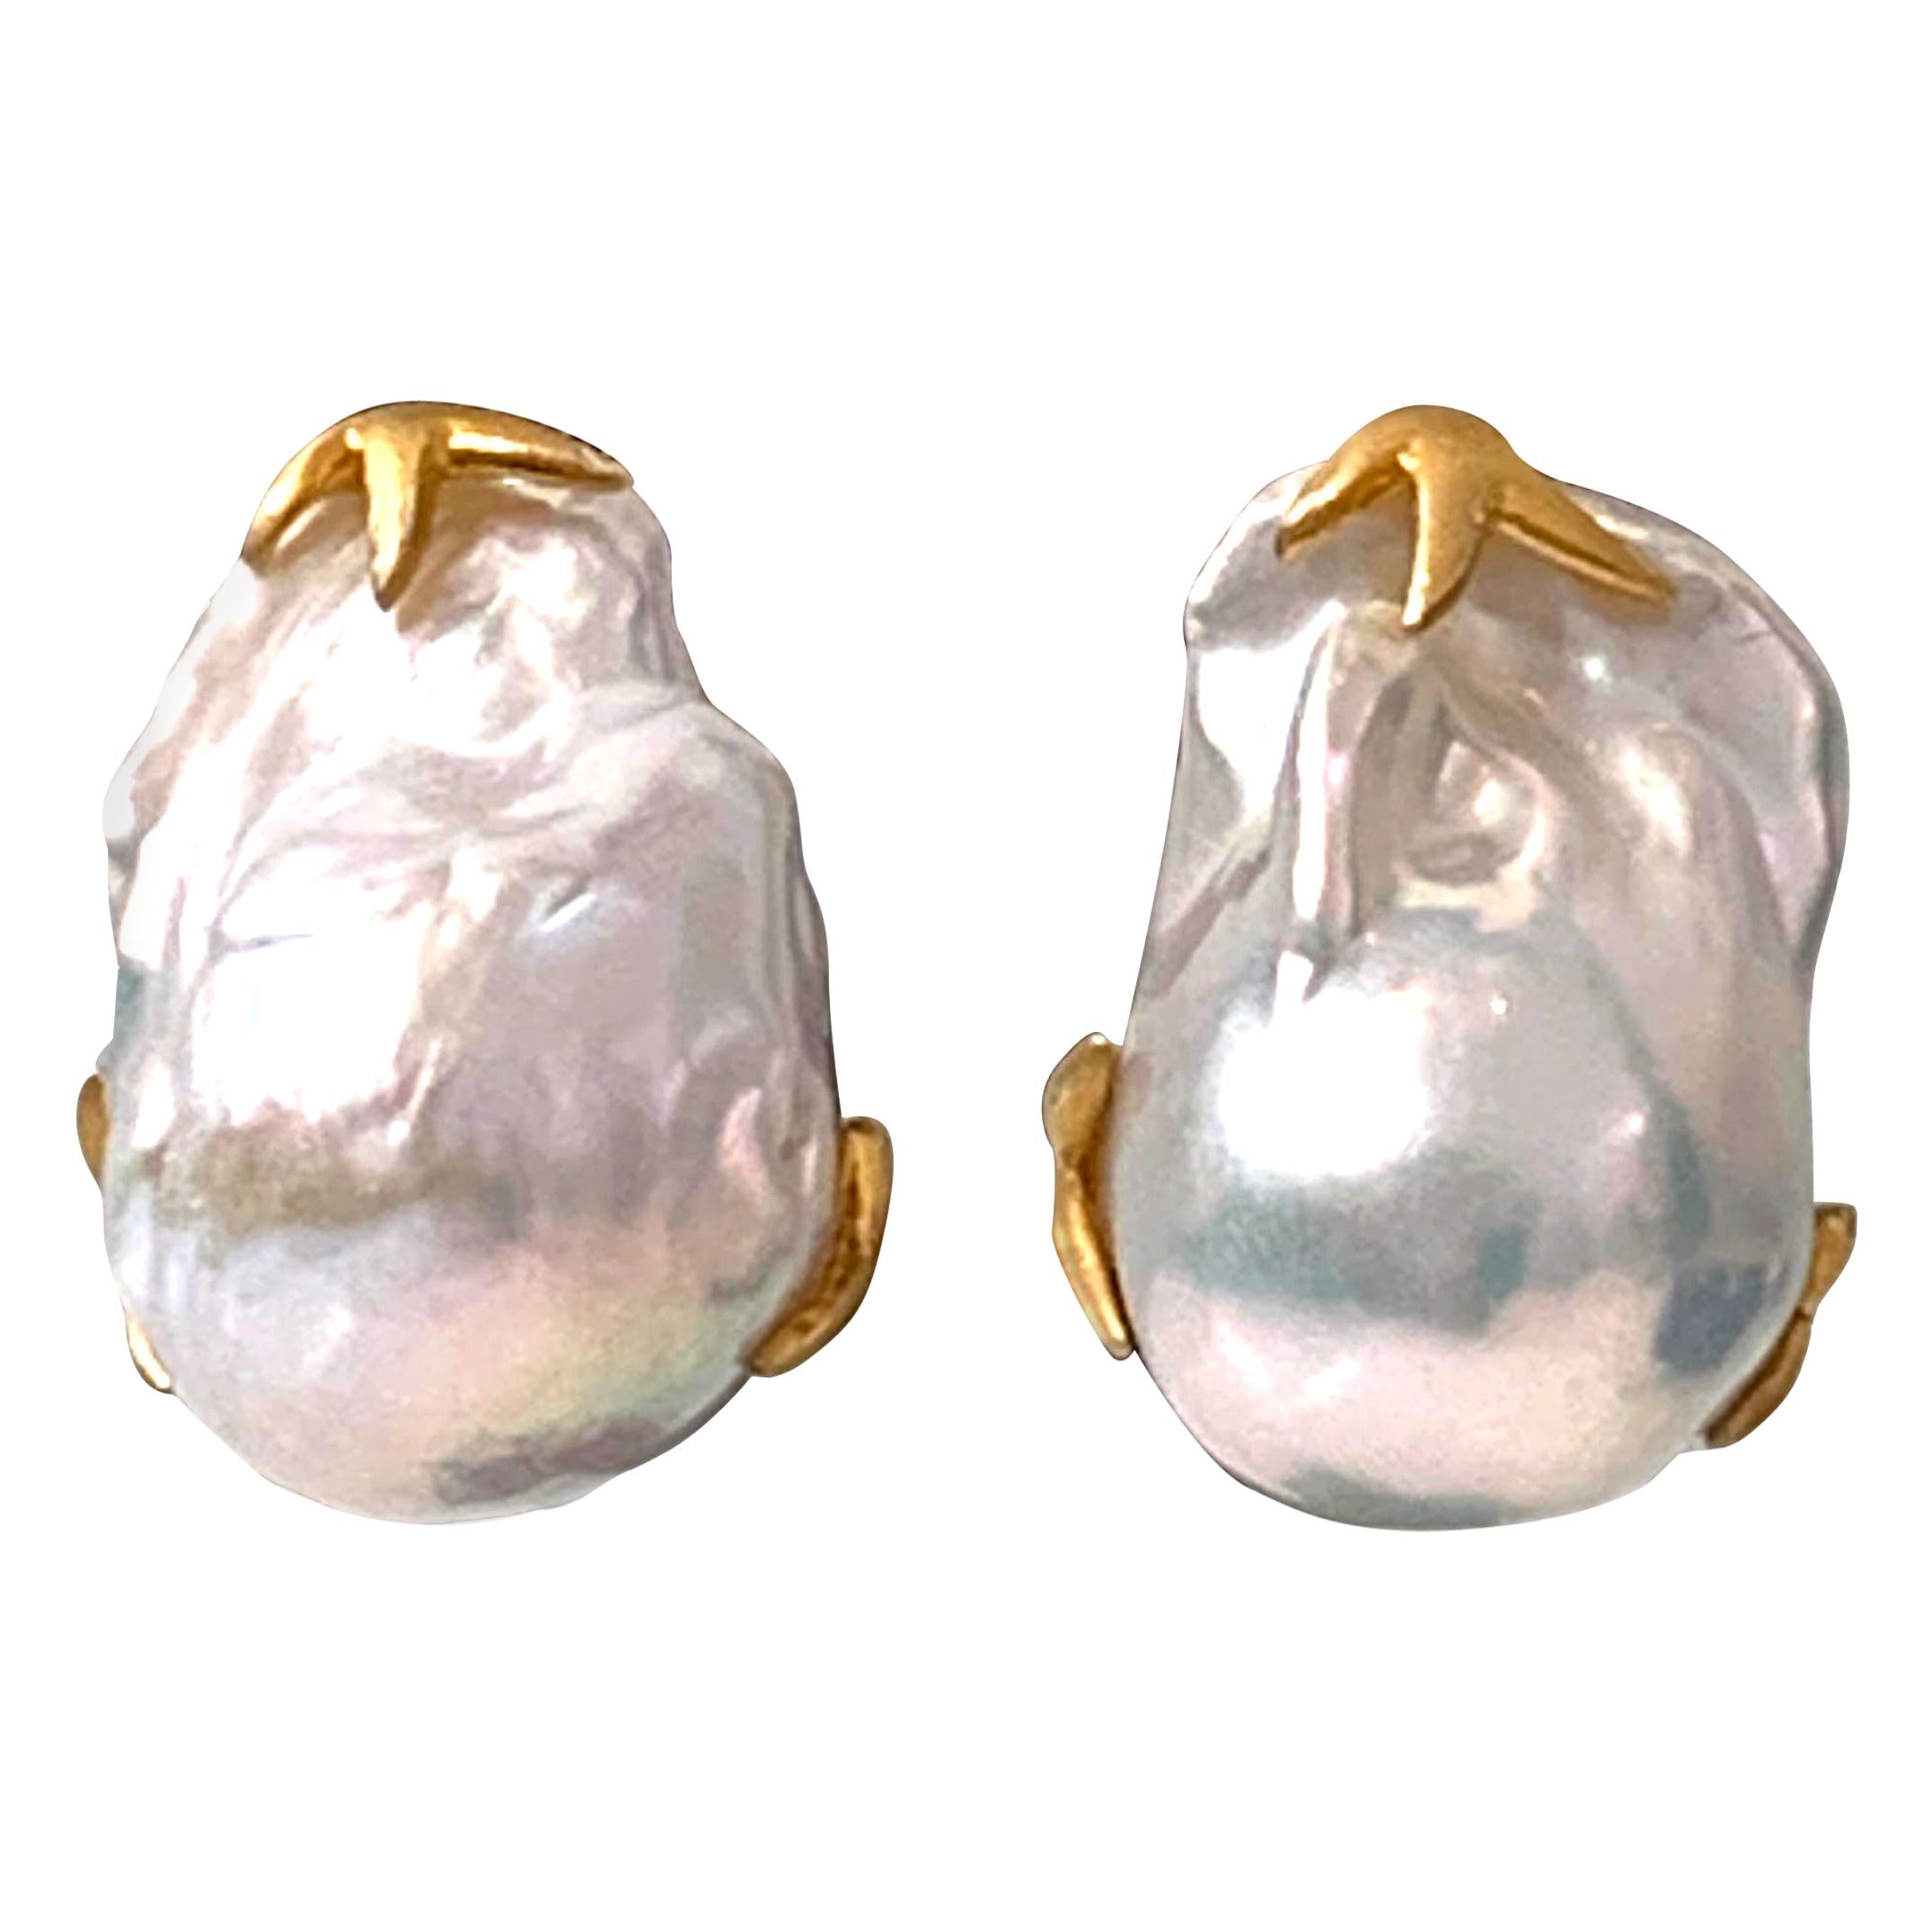 Large Lustrous pair of Freshwater Baroque Pearl Earrings